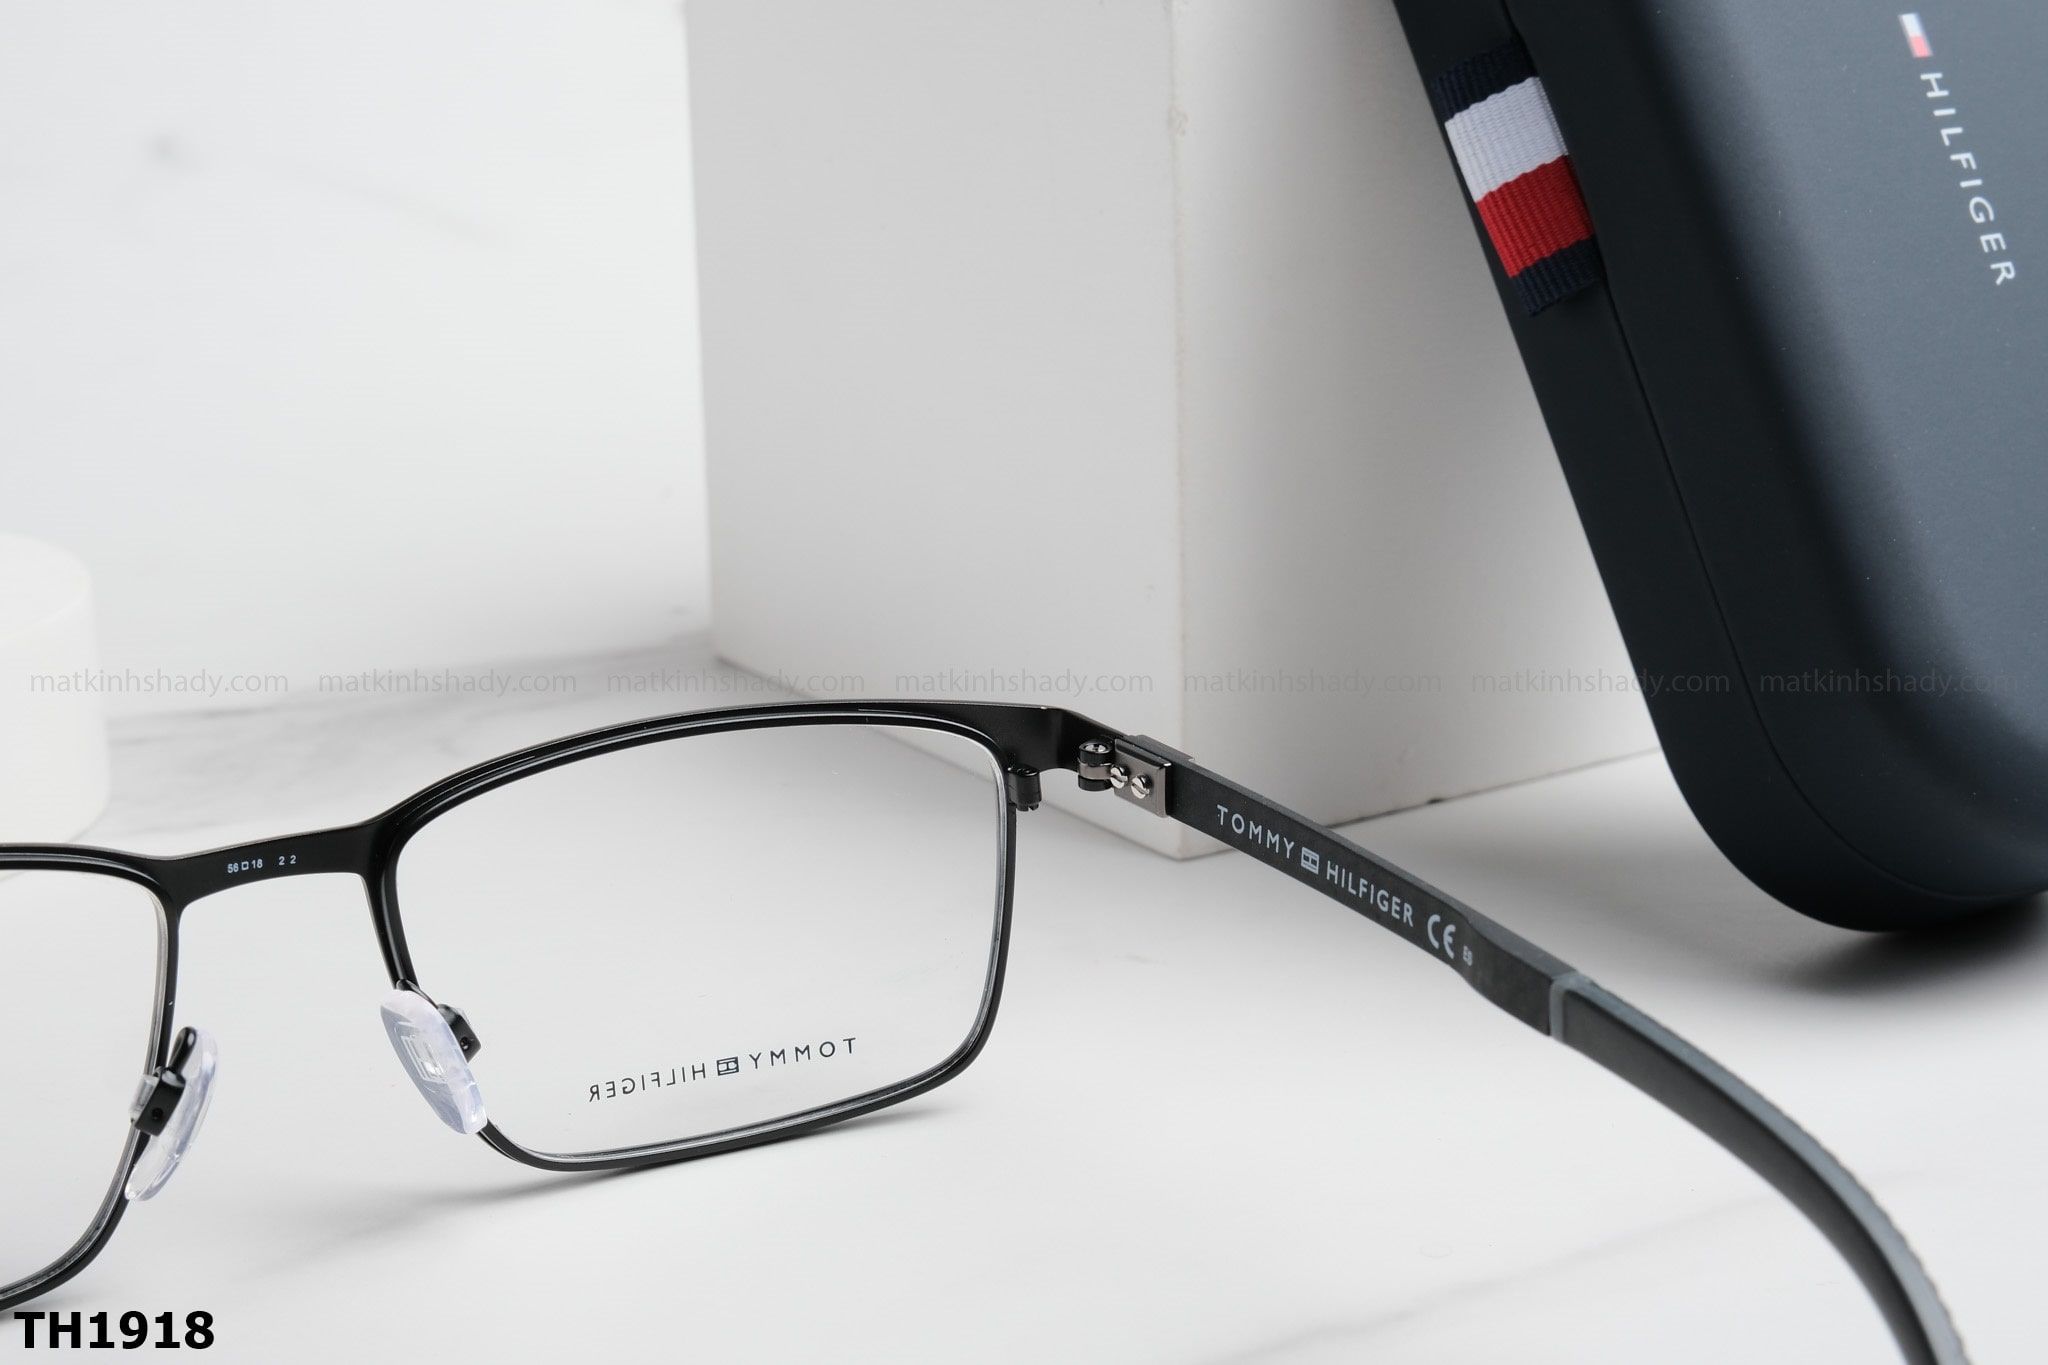  Tommy Hilfiger Eyewear - Glasses - TH1918 